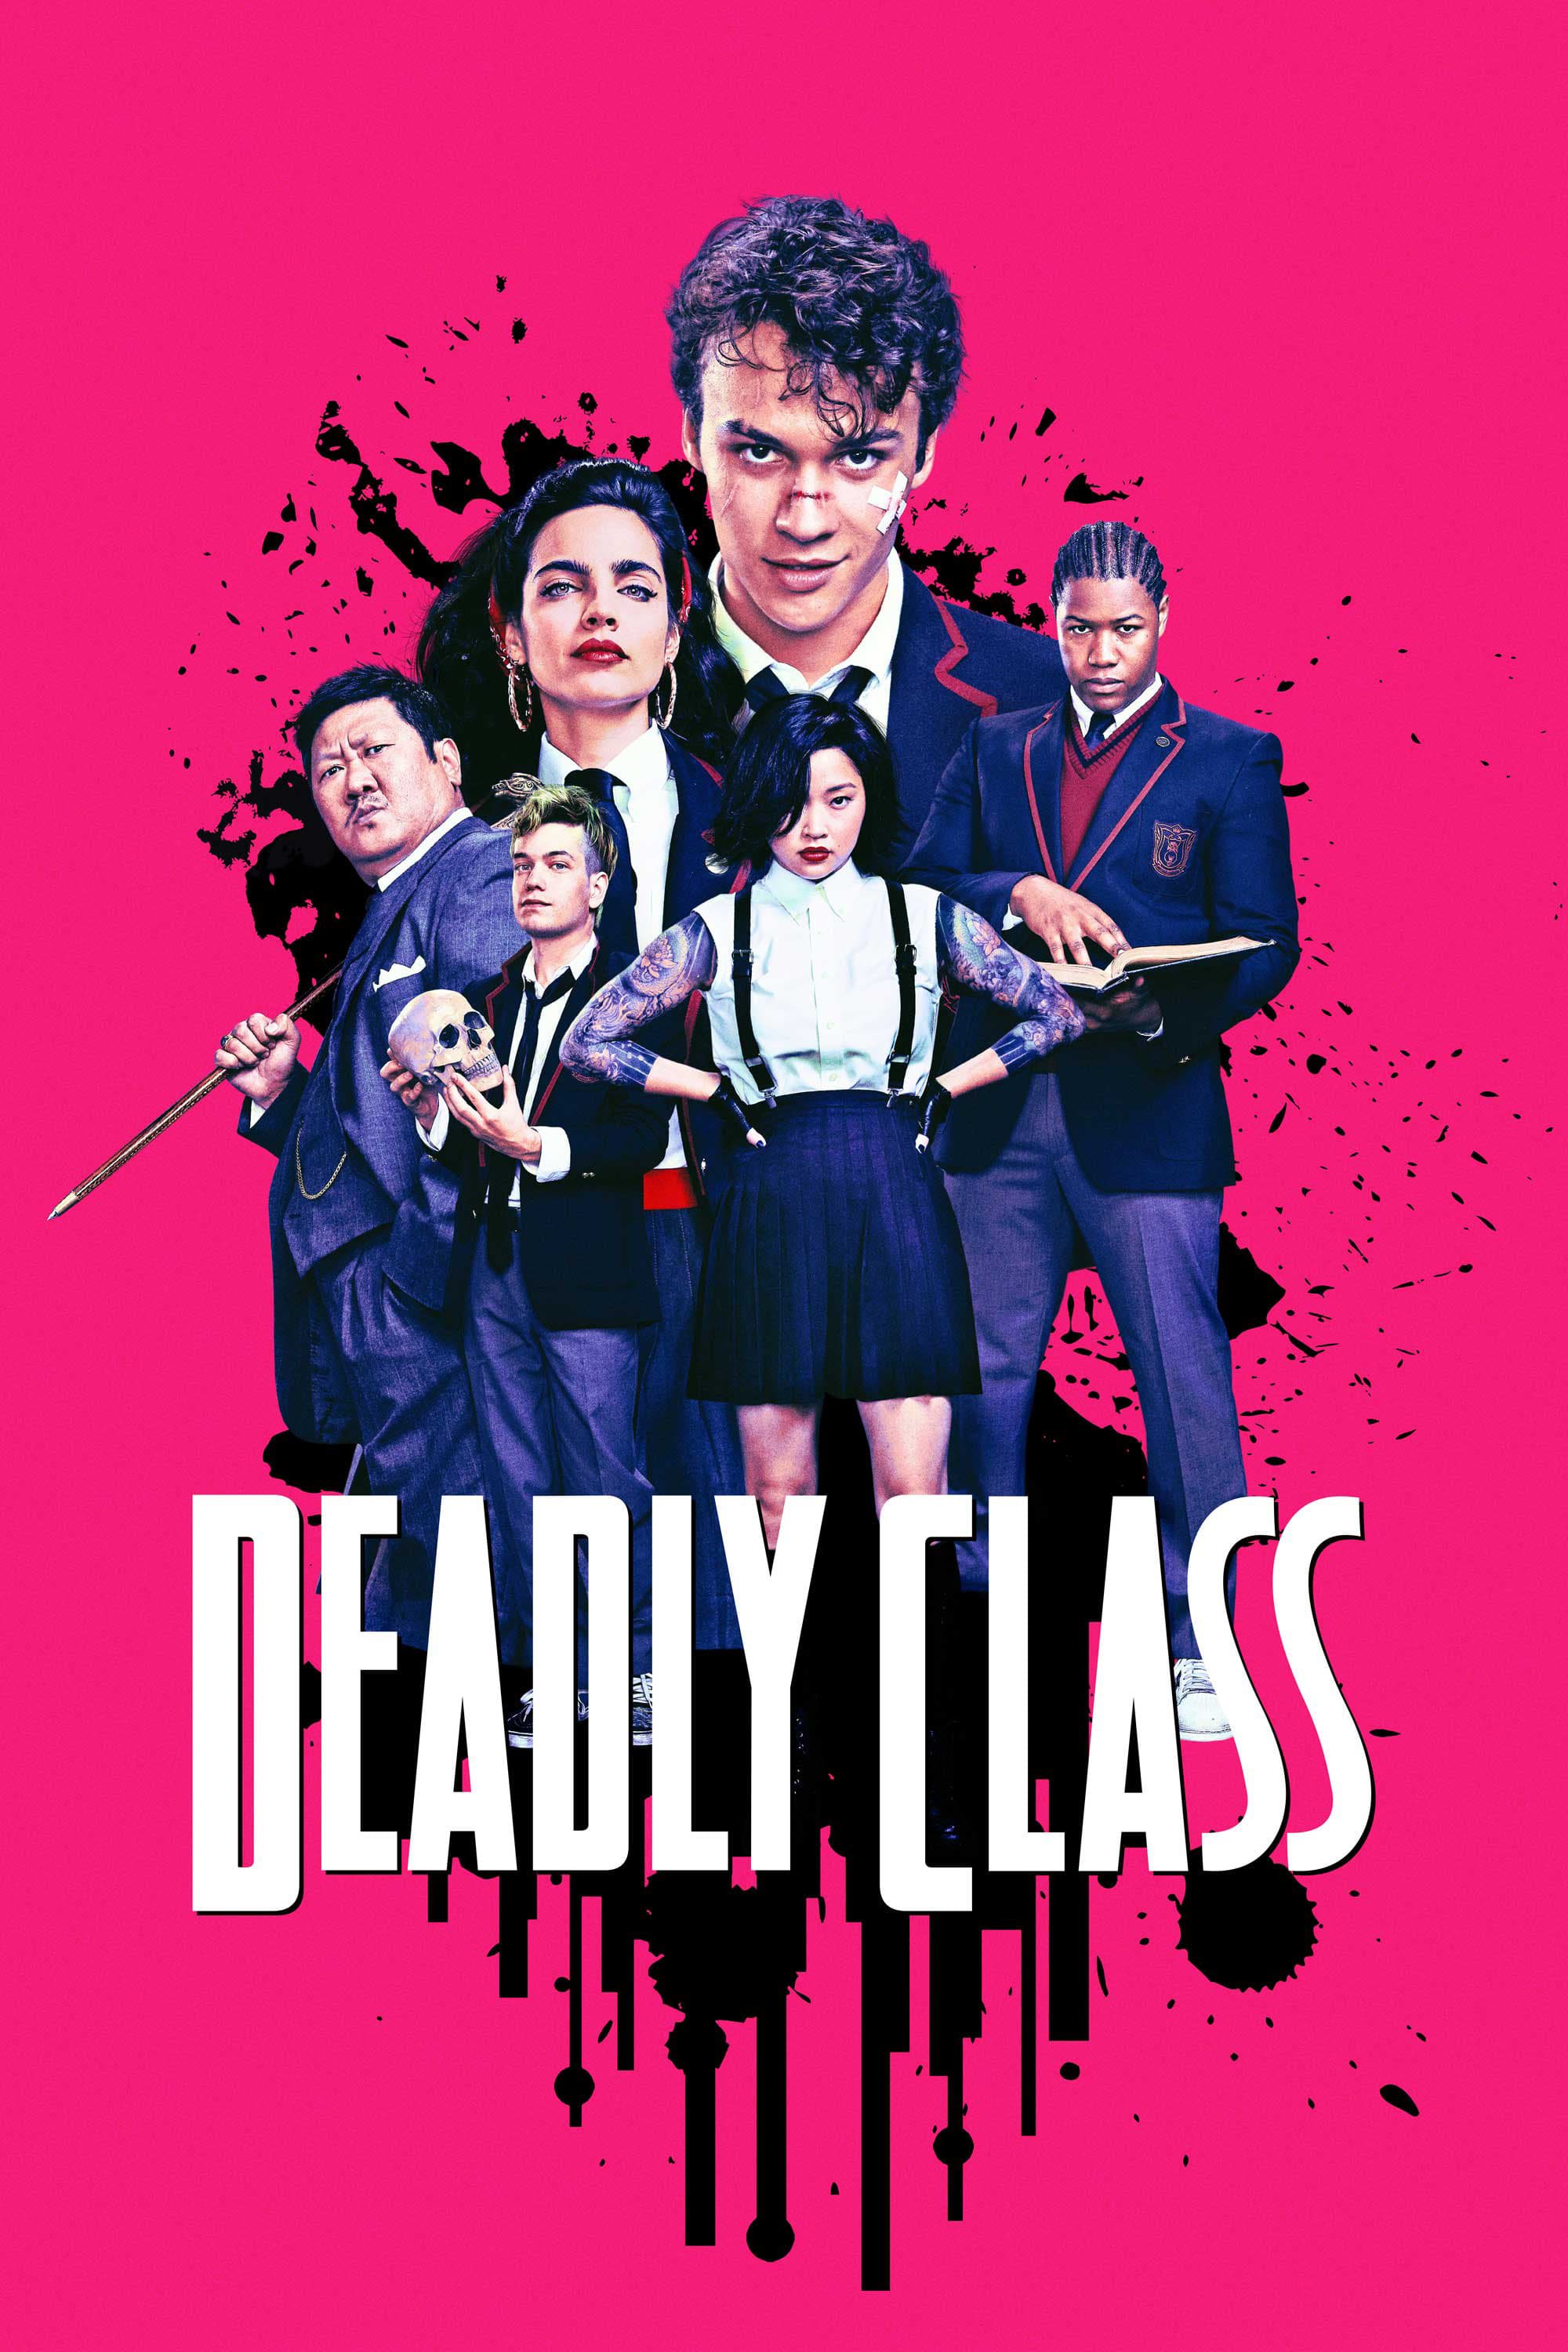 Deadly Class (2019)